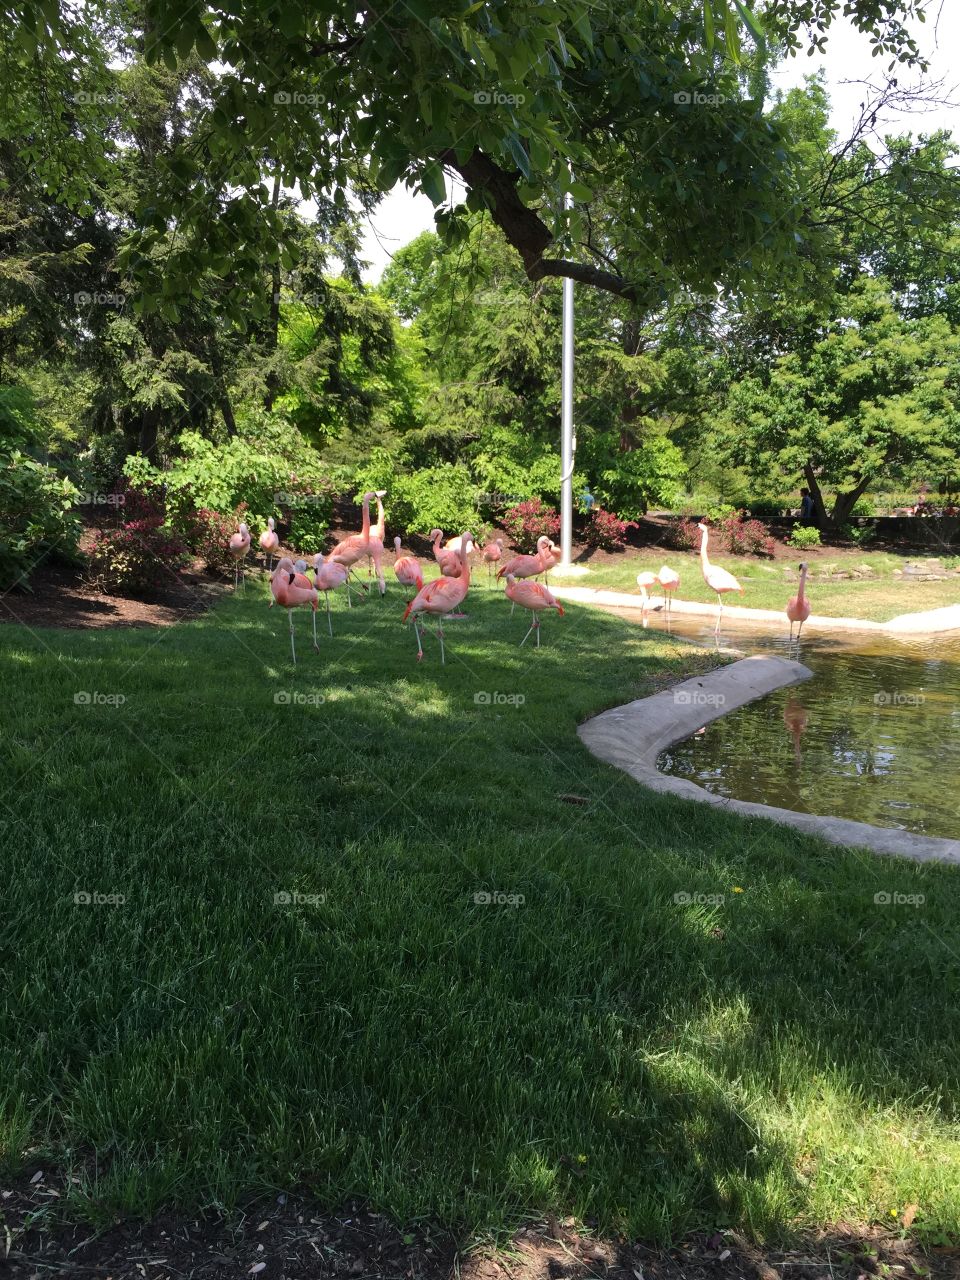 Flamingos at the zoo